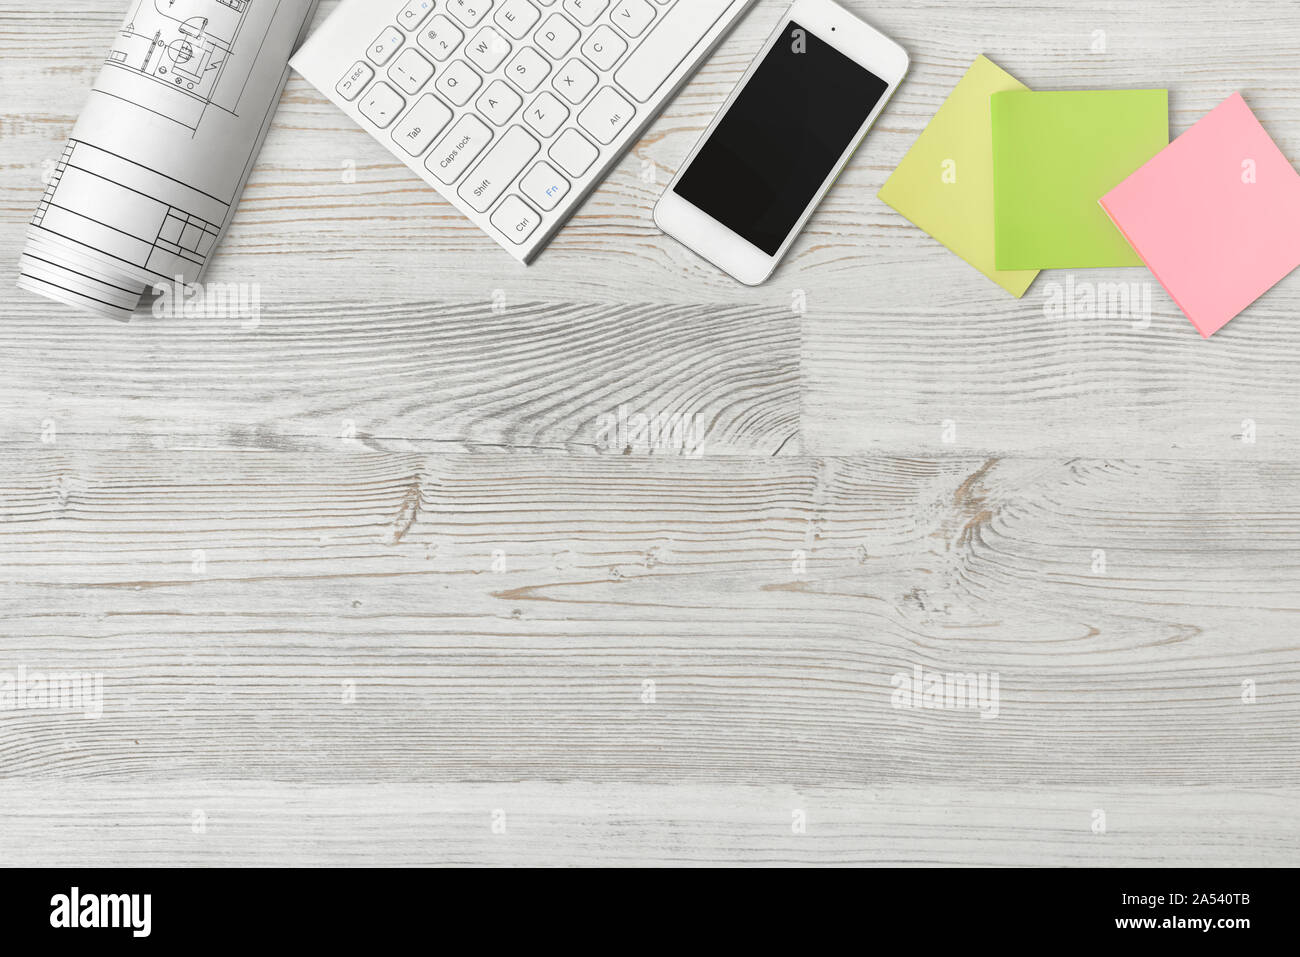 Vista superiore del luogo di lavoro con rotolo di carta, tastiera, smartphone e adesivi sul tavolo di legno Foto Stock